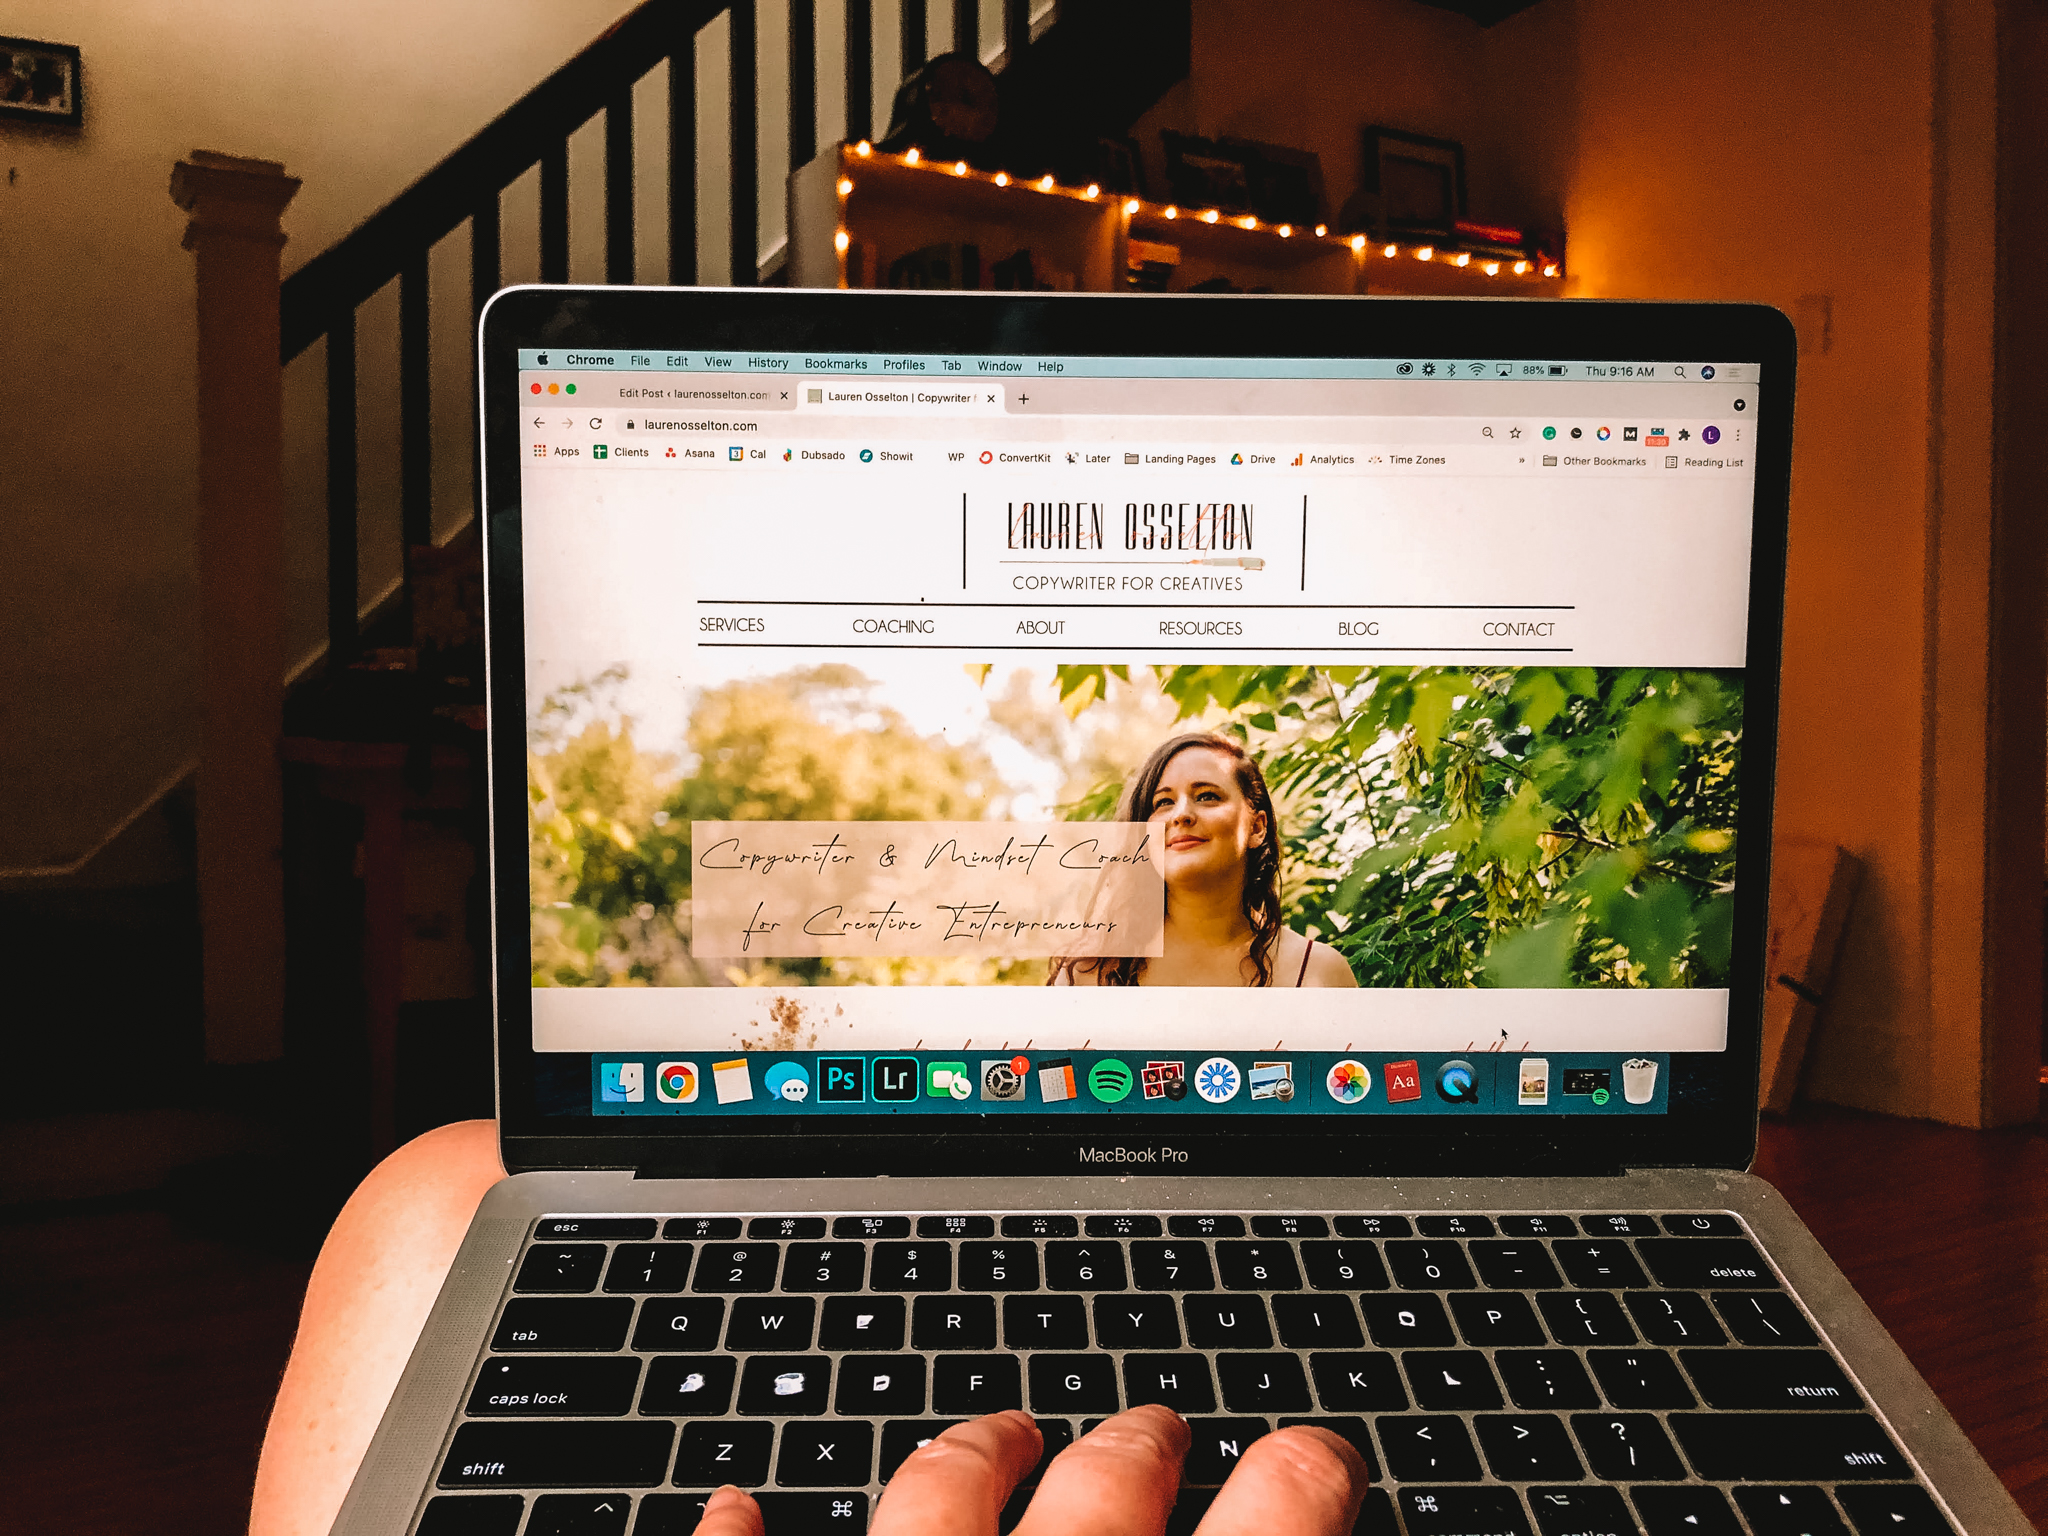 Laptop with Lauren Osselton, Creative Copywriter, website homepage displayed